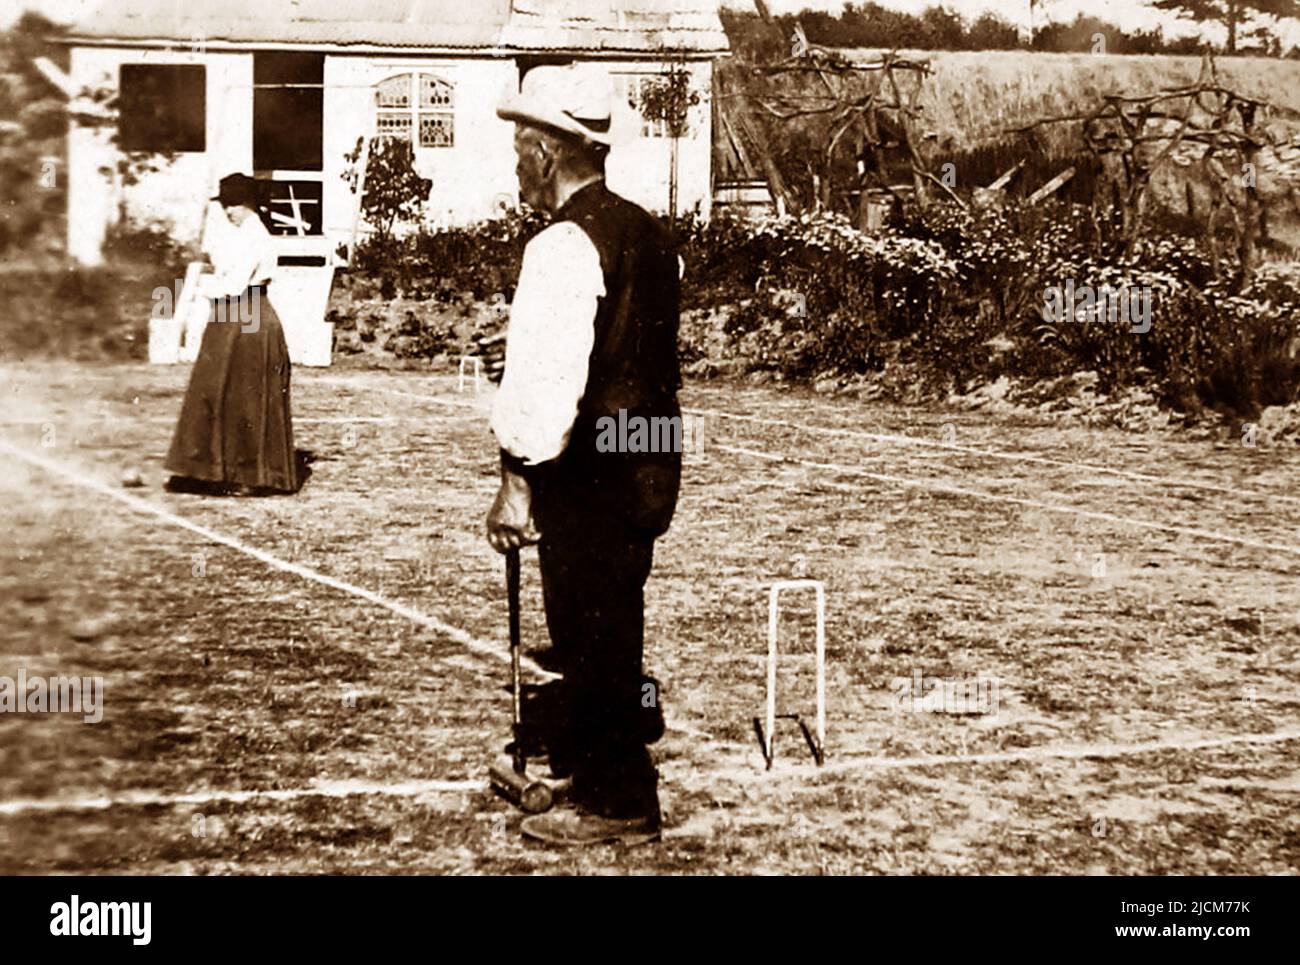 Giocare croquet, forse 1870s Foto Stock